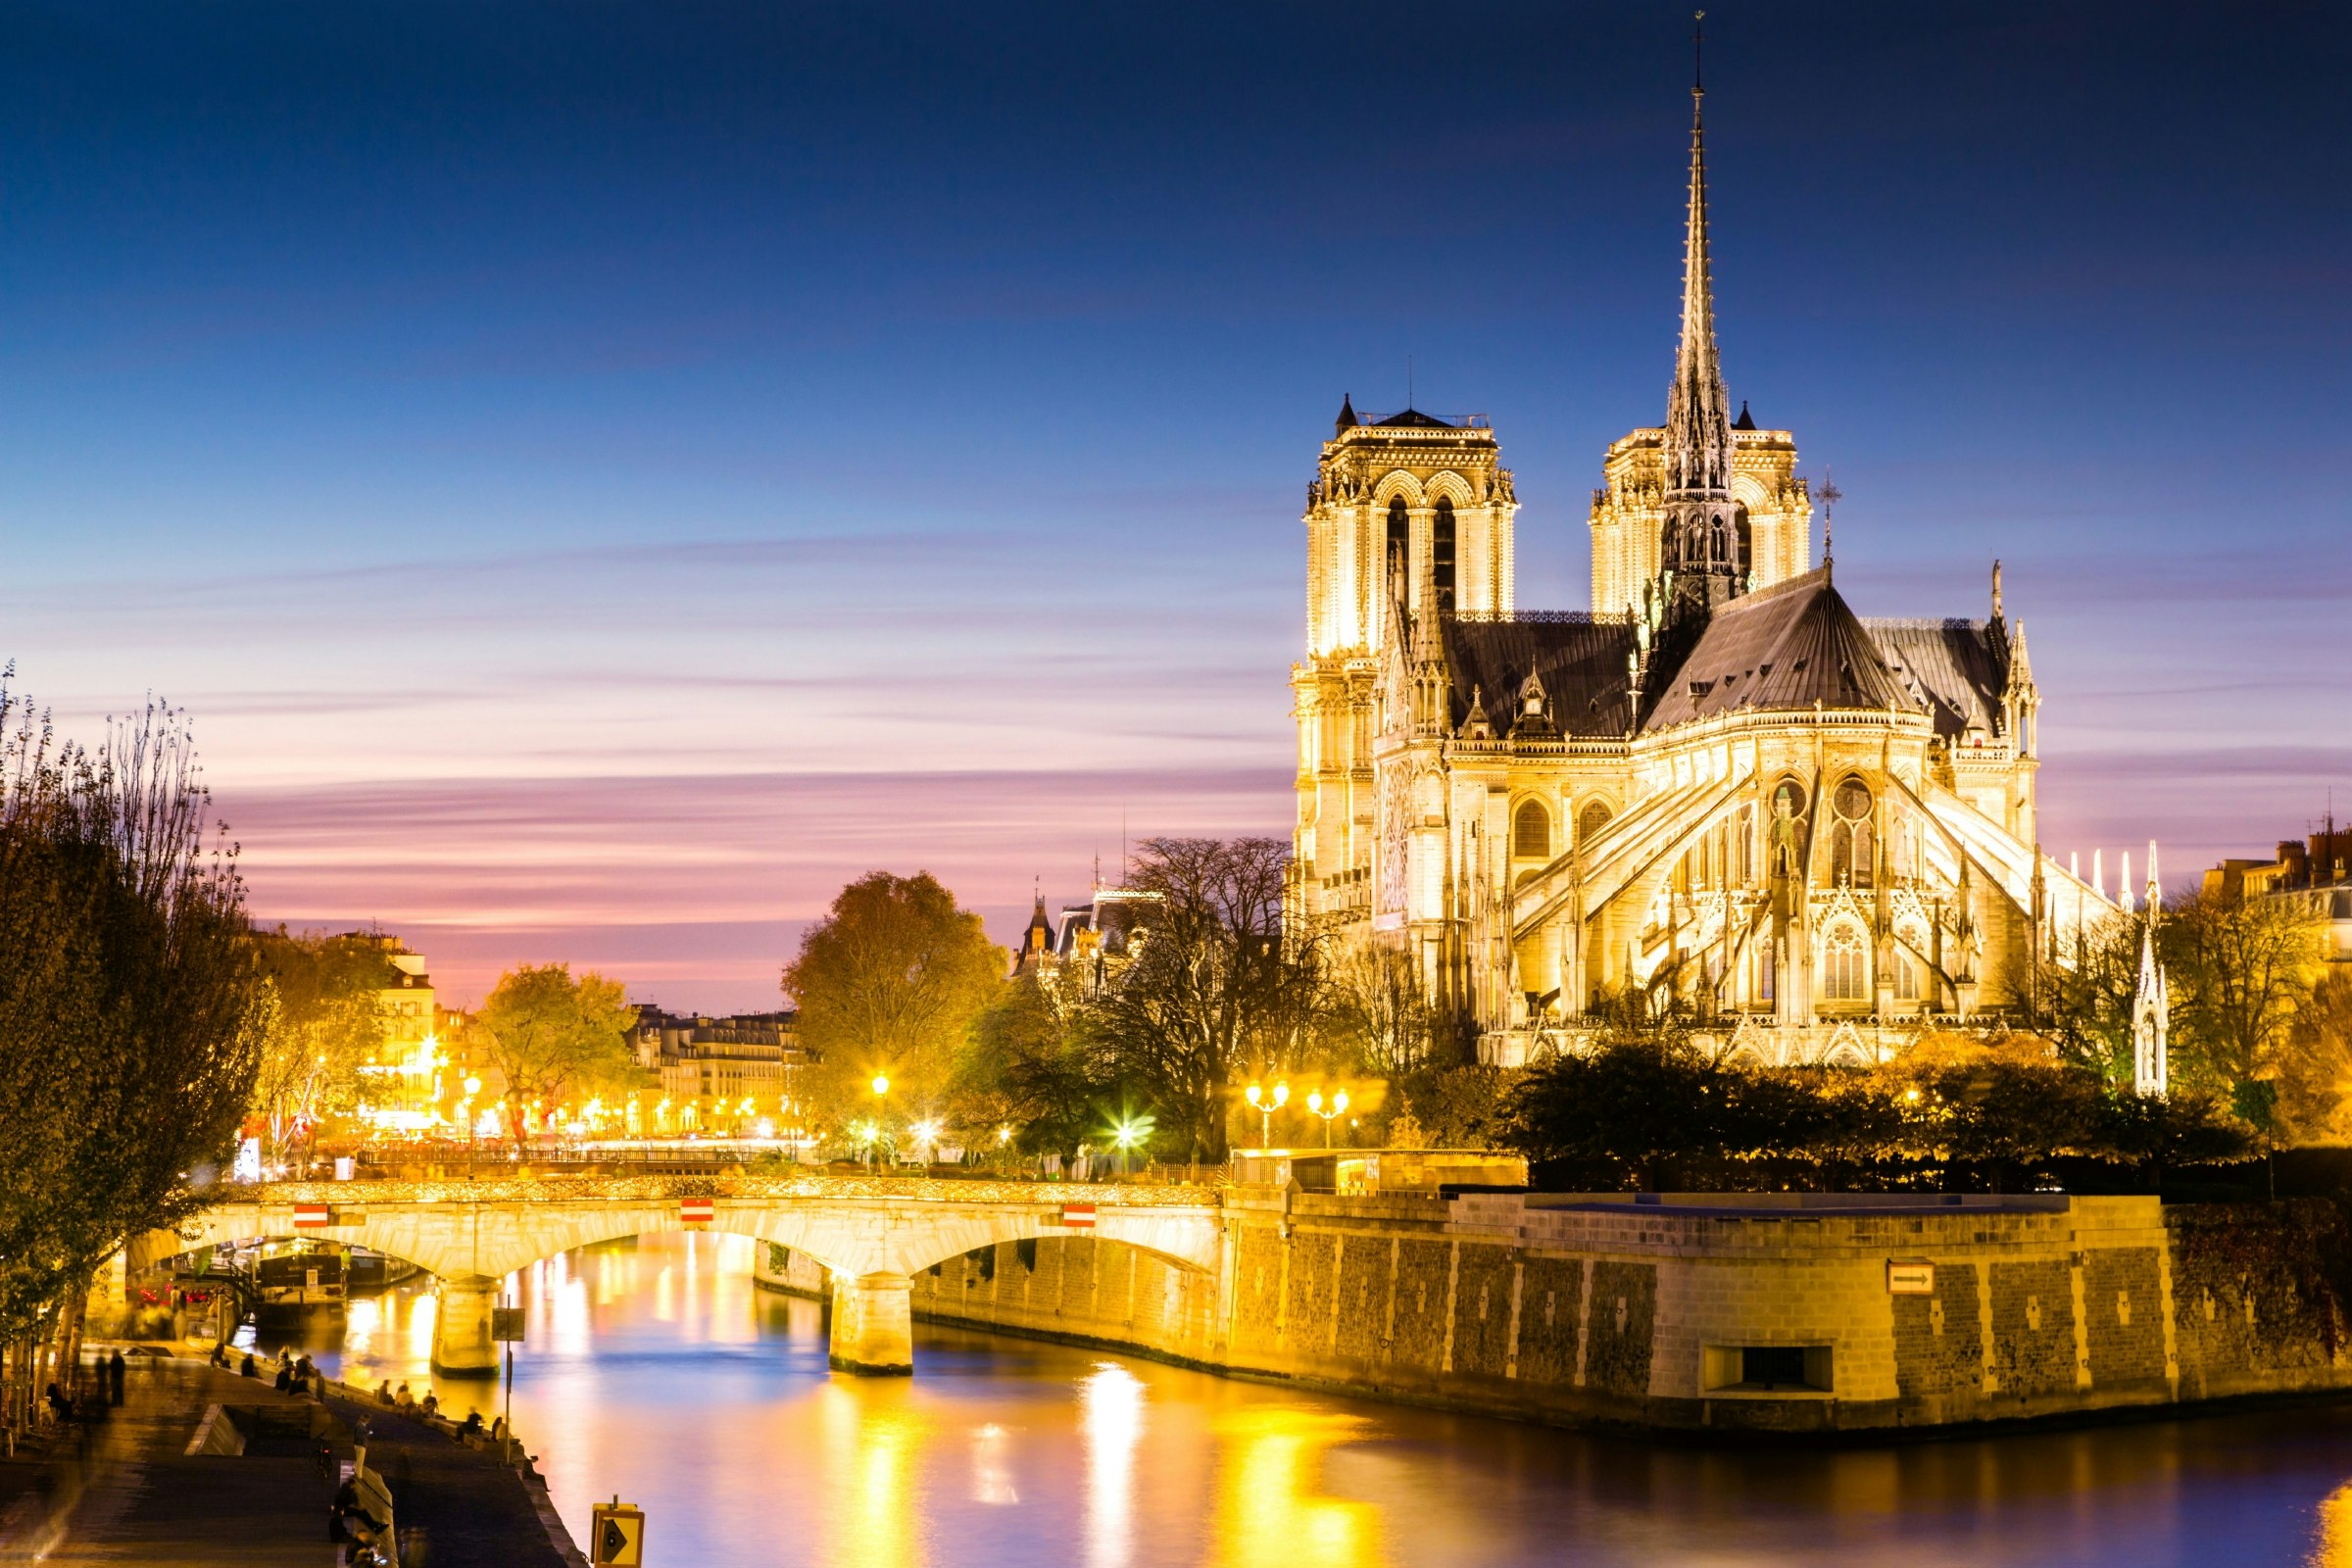 Notre Dame cathedral lit up at dusk